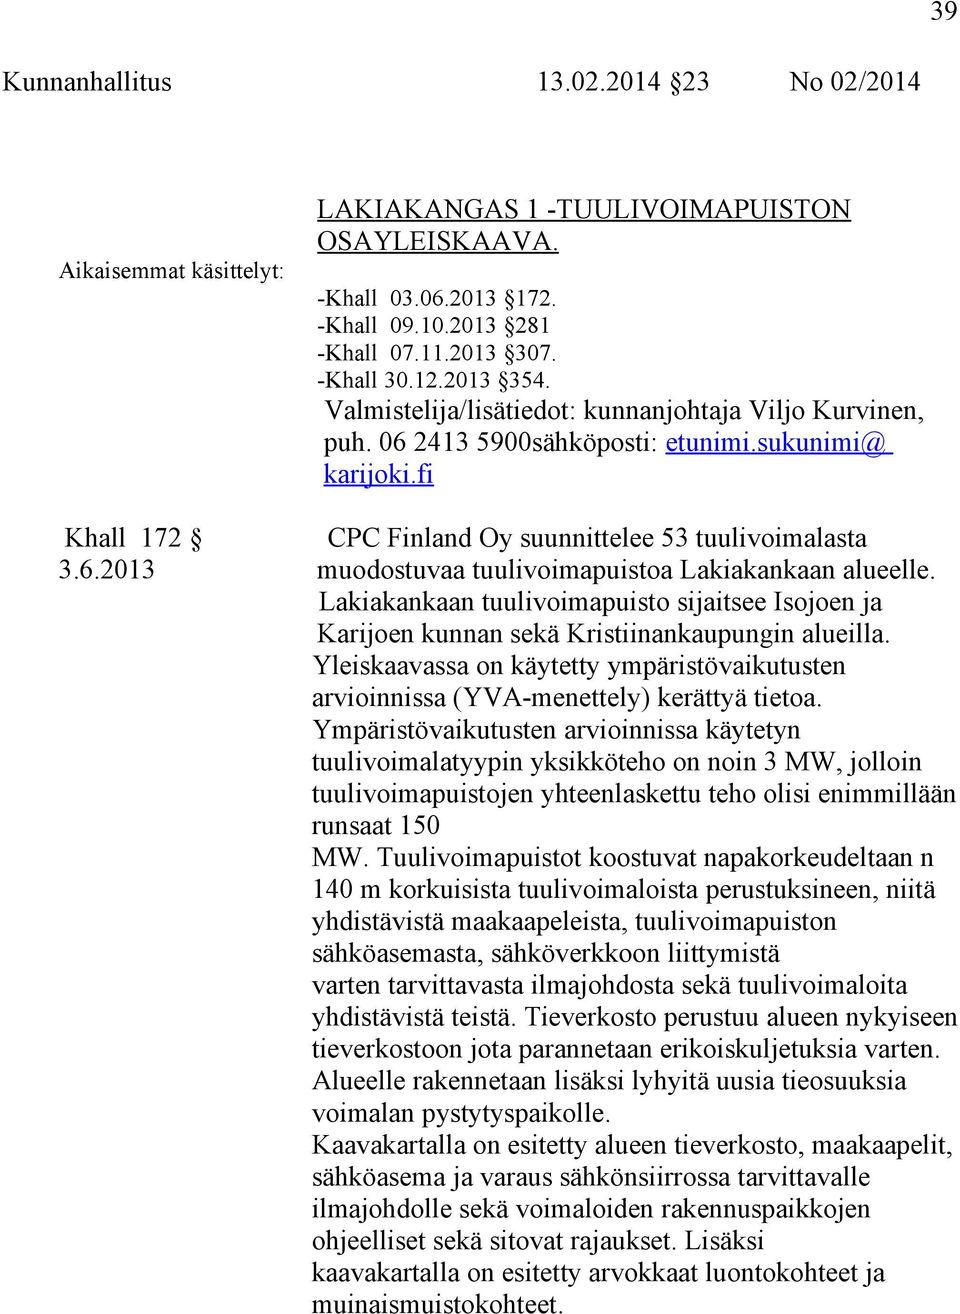 Lakiakankaan tuulivoimapuisto sijaitsee Isojoen ja Karijoen kunnan sekä Kristiinankaupungin alueilla. Yleiskaavassa on käytetty ympäristövaikutusten arvioinnissa (YVA-menettely) kerättyä tietoa.